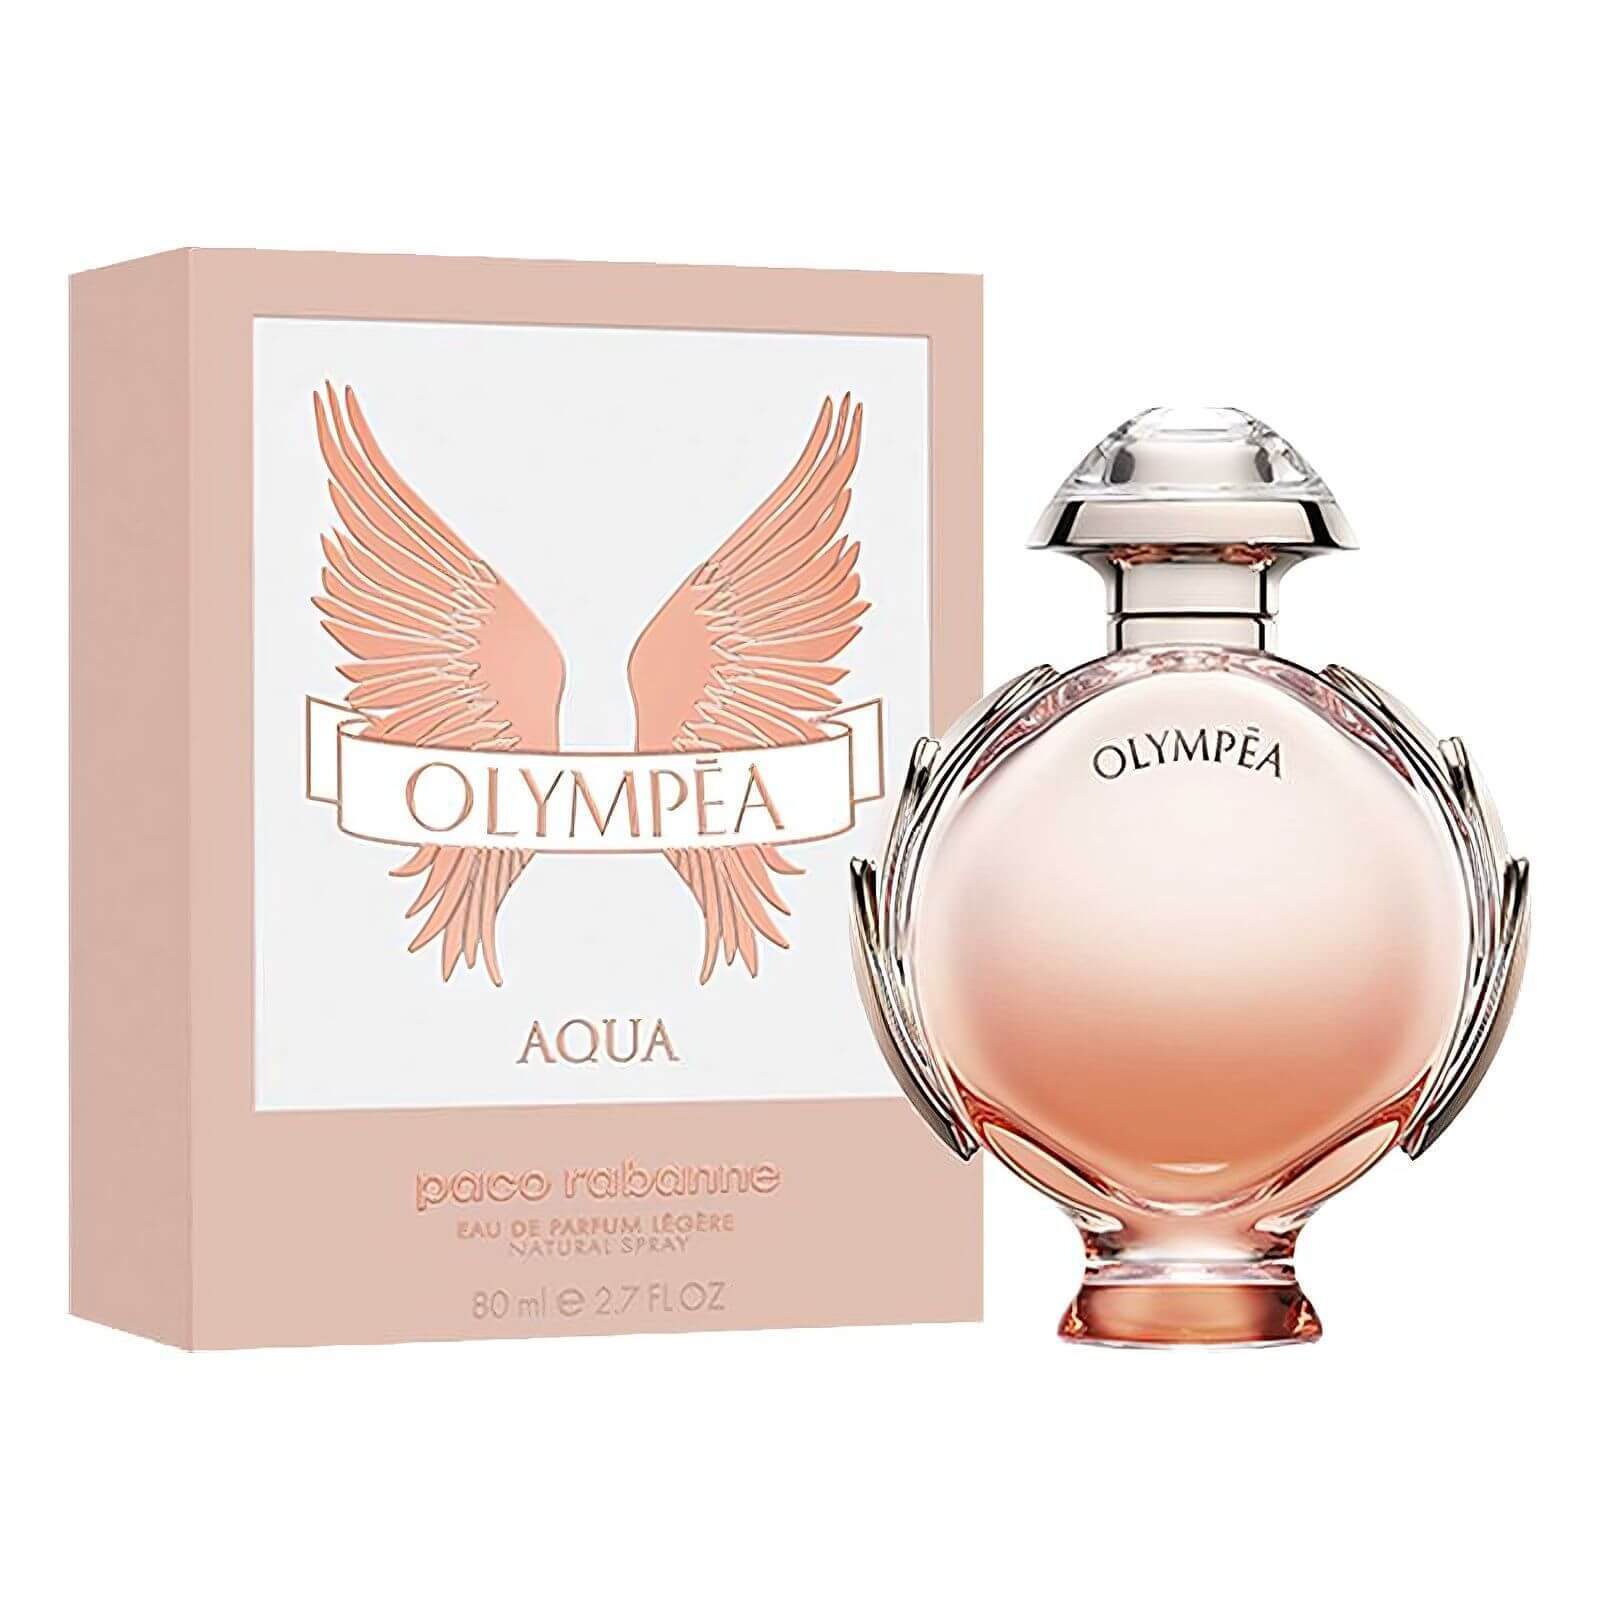 Olympea Aqua By Paco Rabanne For Women 2.7 oz Eau De Parfum Spray